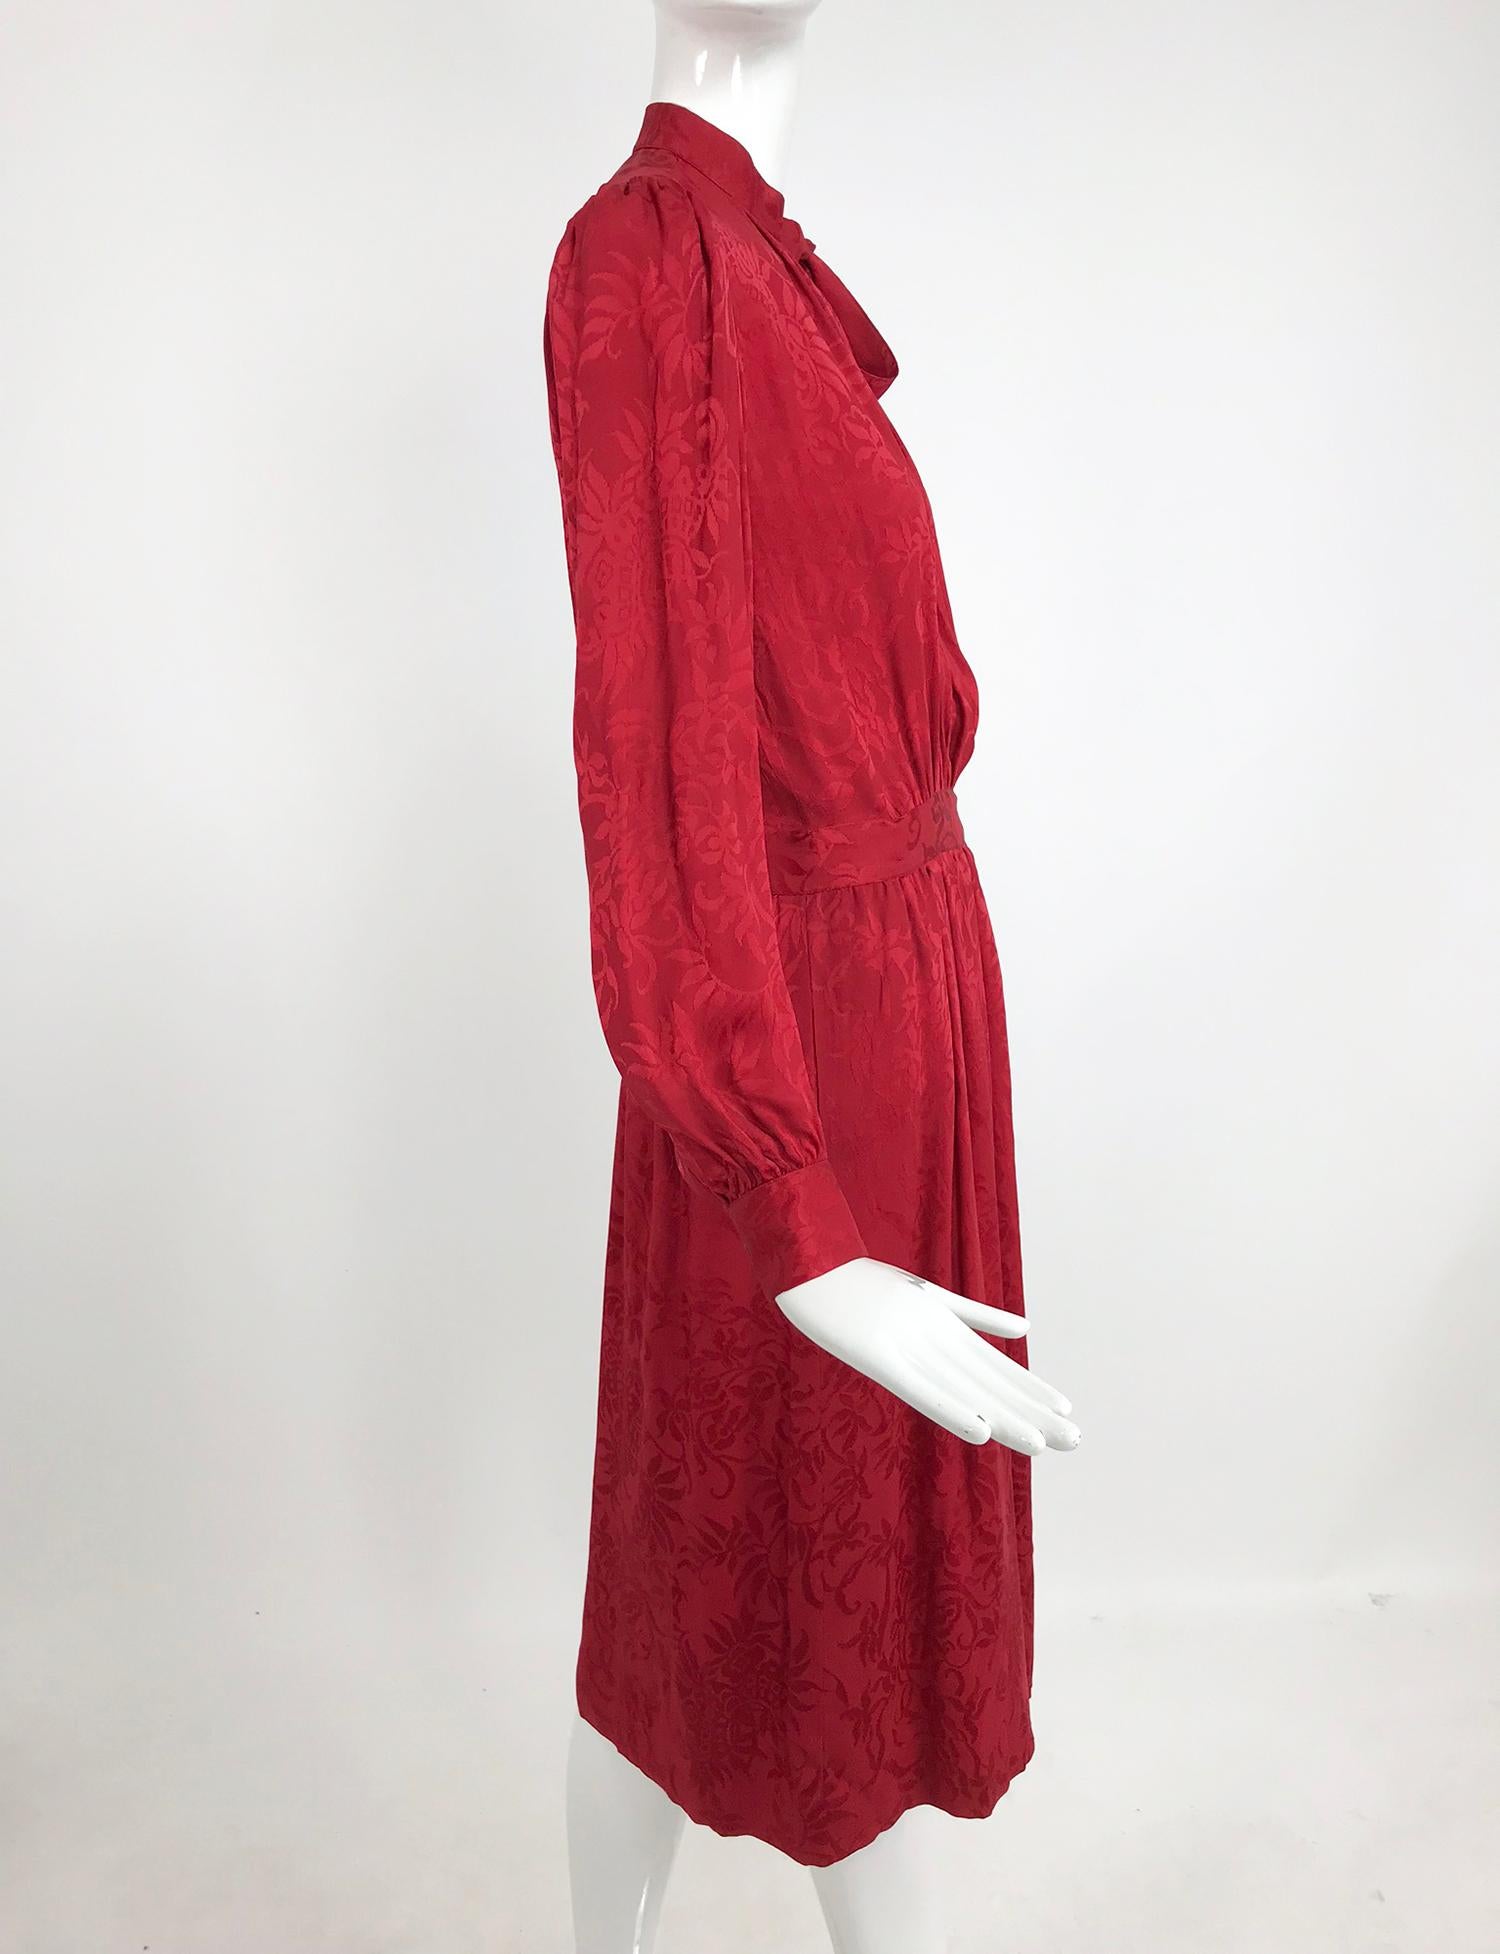 Yves Saint Laurent - Robe en jacquard de soie rouge avec nœud papillon, années 1970 2